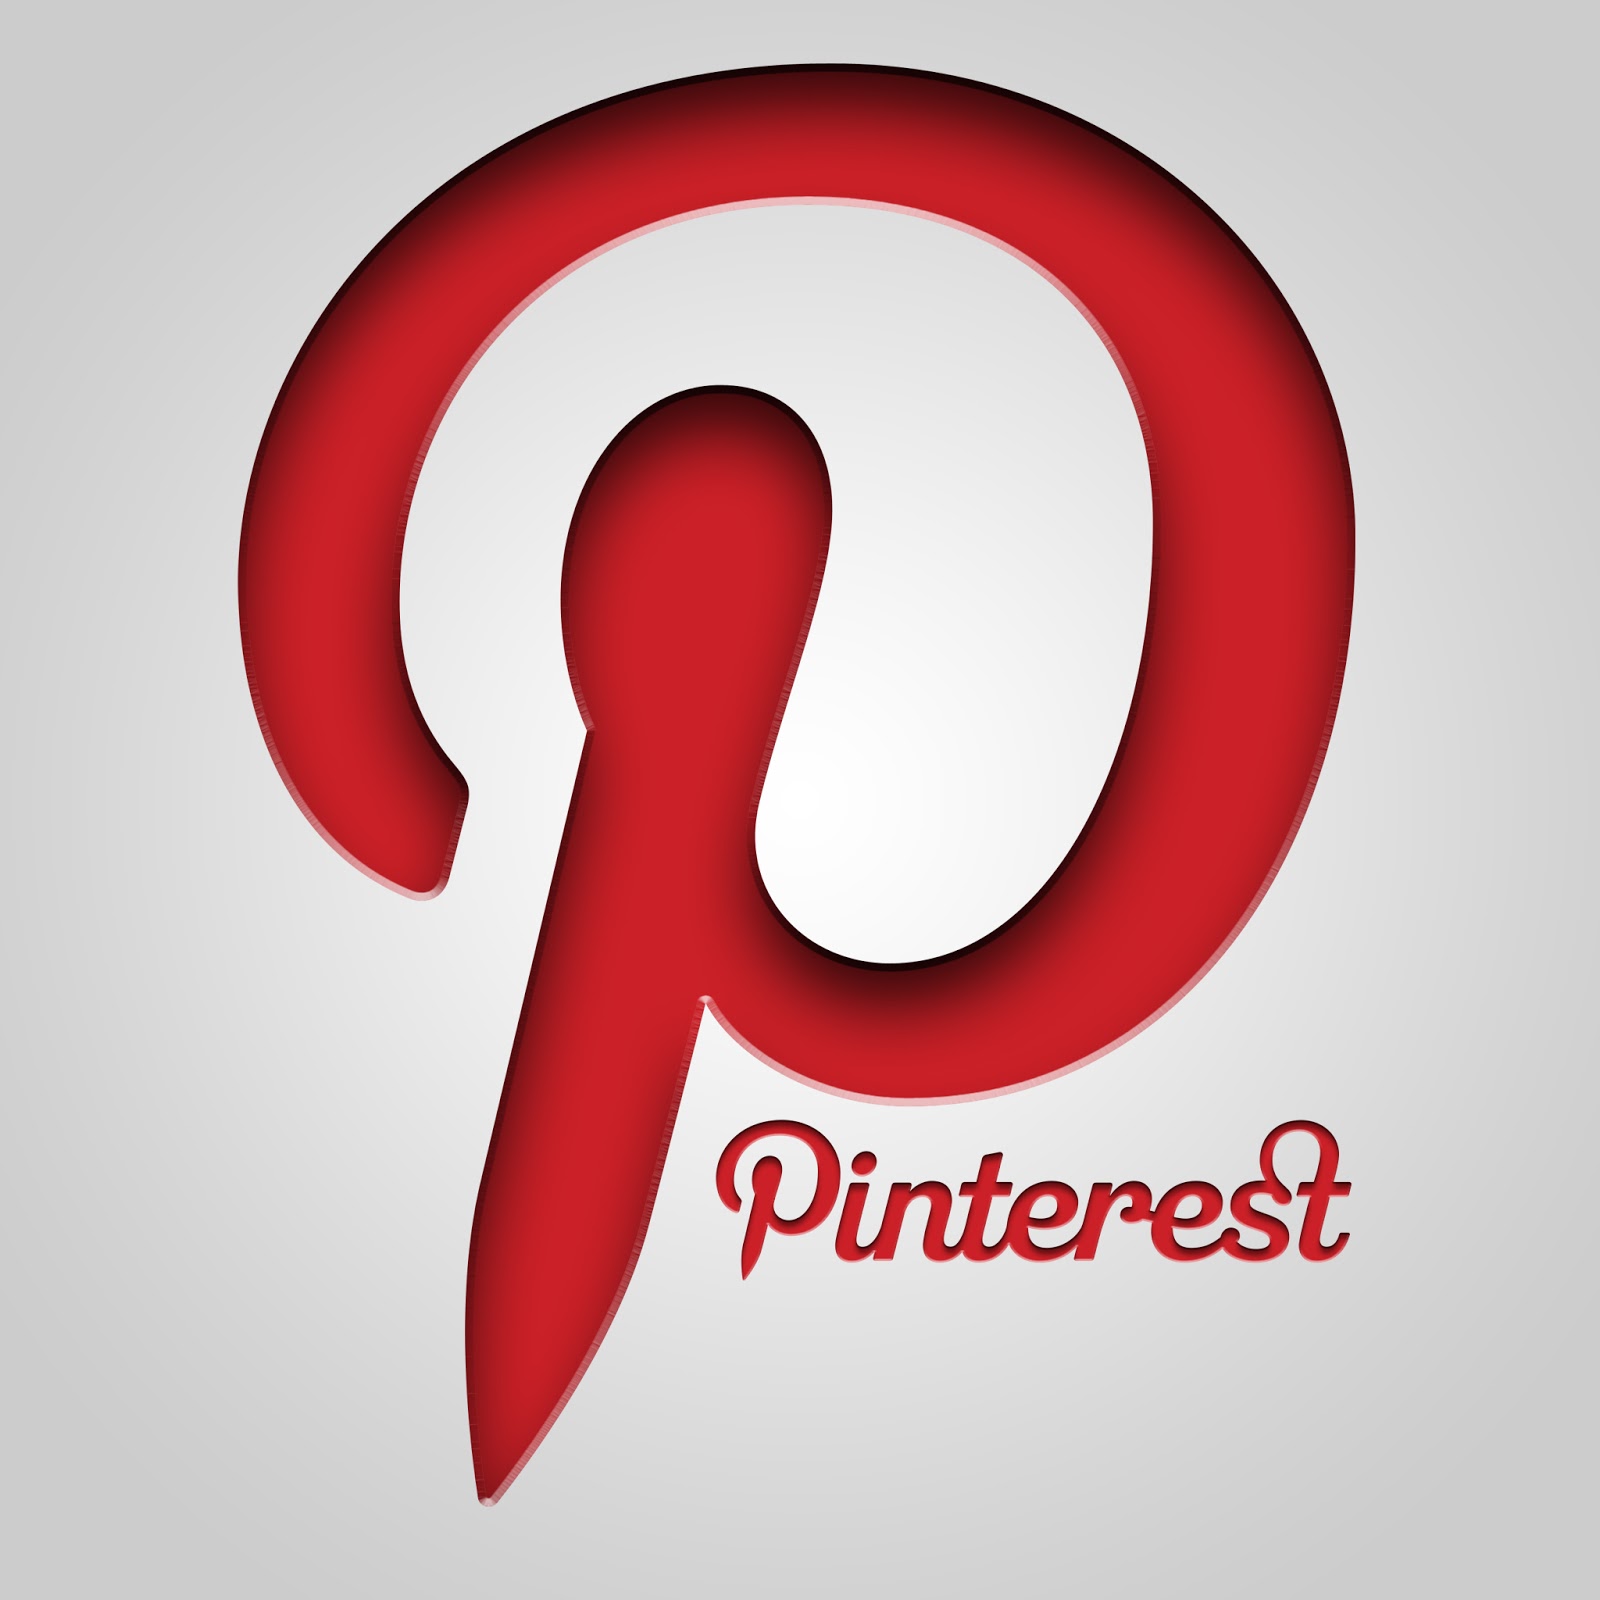 Pinterest iPad Retina Wallpaper | Free HD iPad Wallpapers